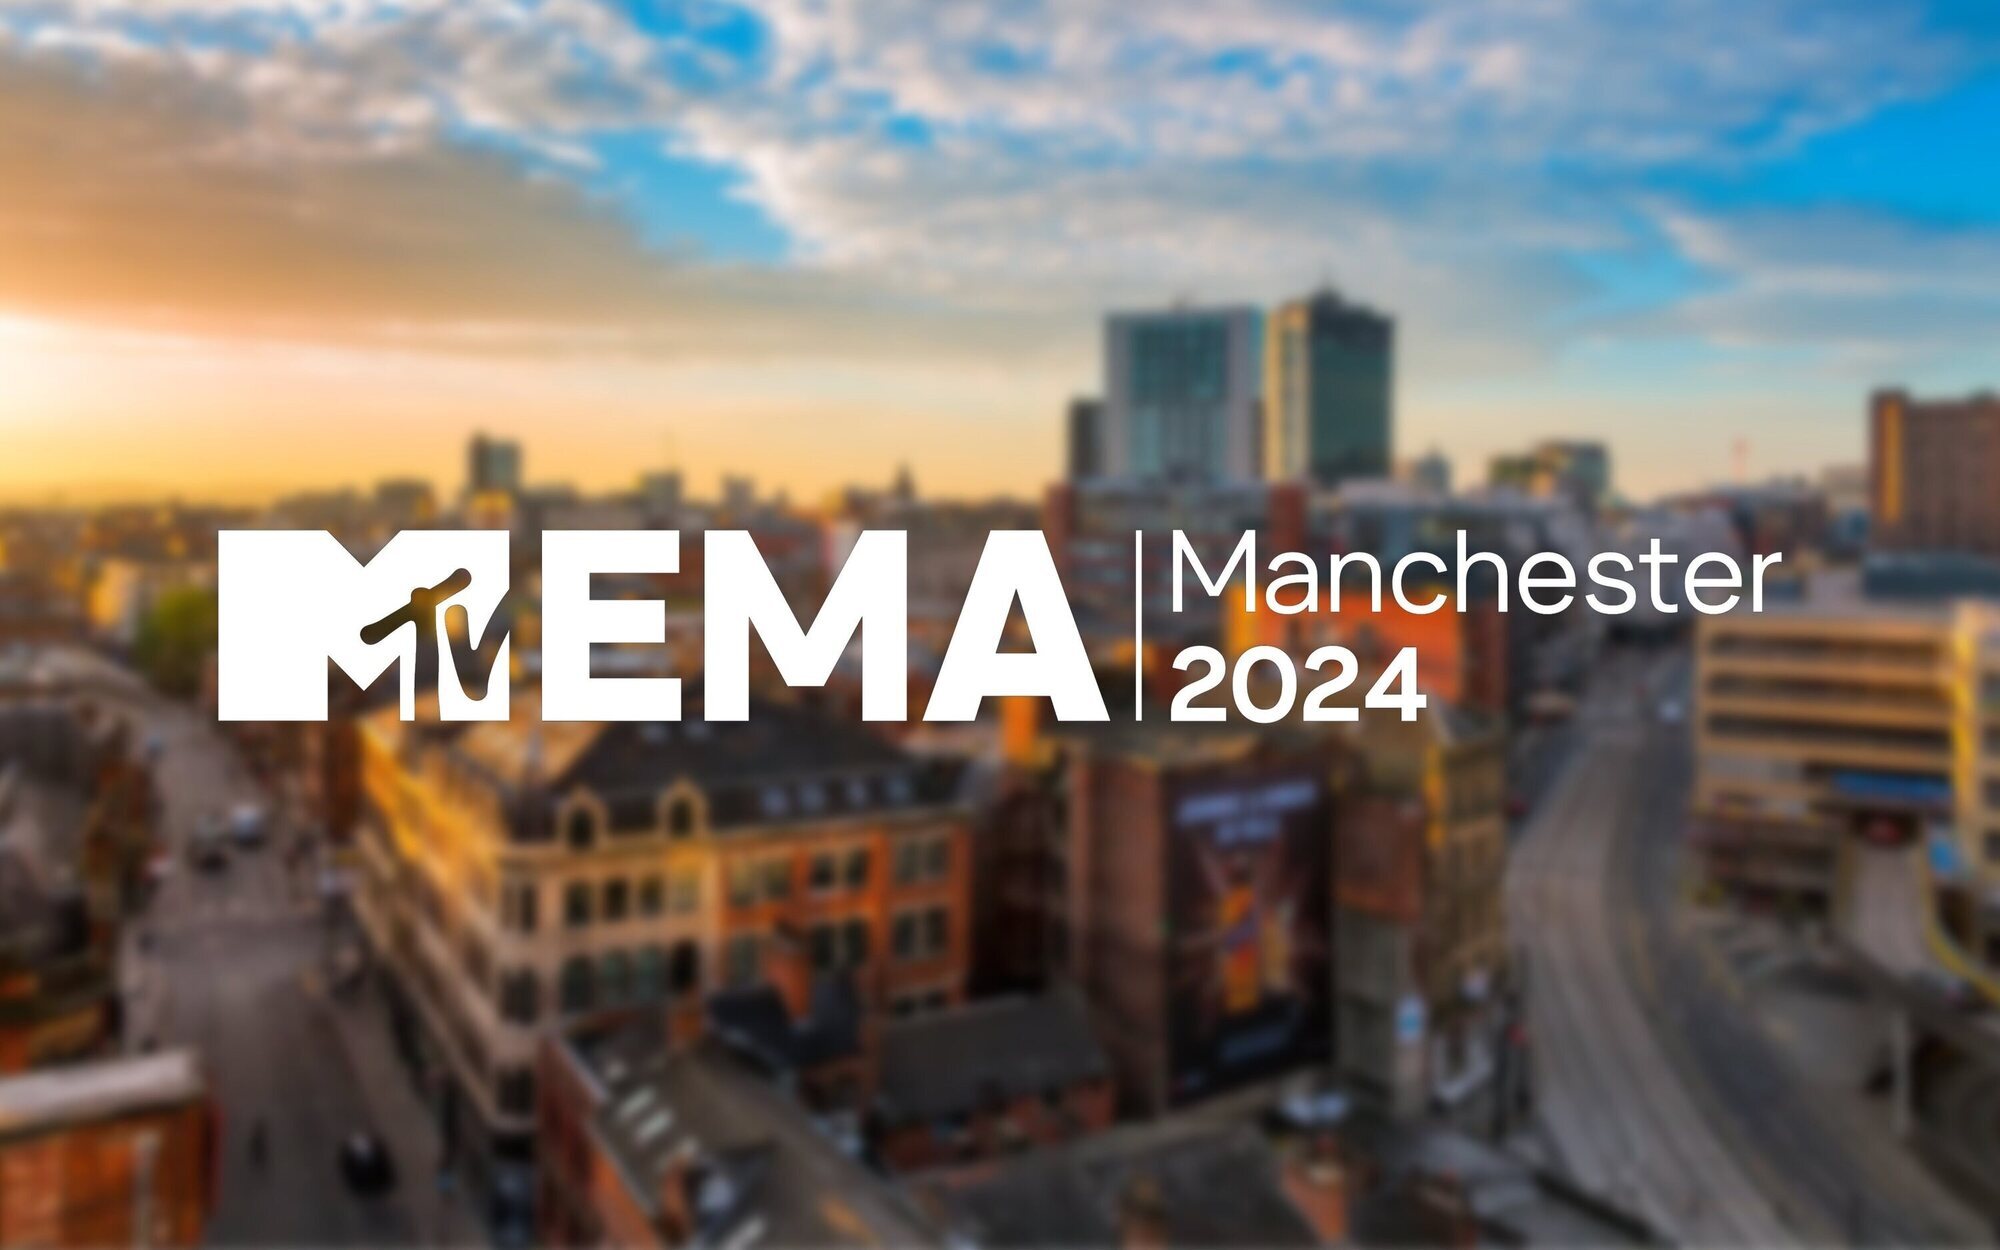 Los MTV EMAs 2024 ya tienen fecha y nueva ciudad anfitriona: se celebrarán el 10 de noviembre en Manchester